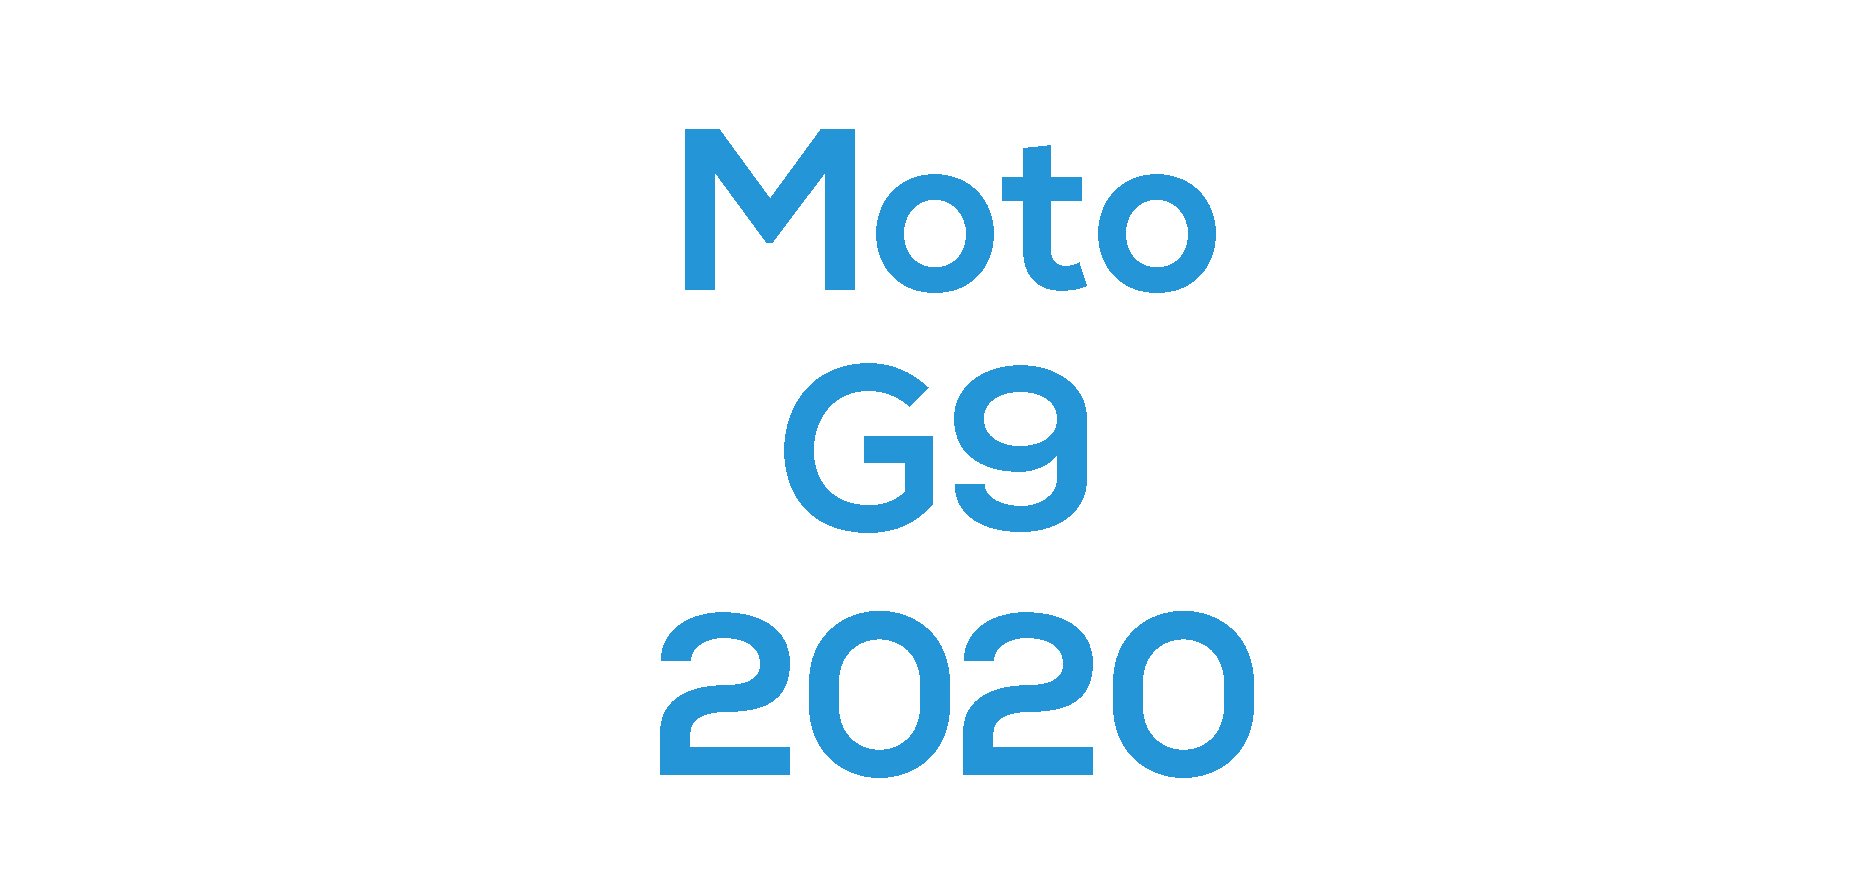 G9 2020 (XT2083)